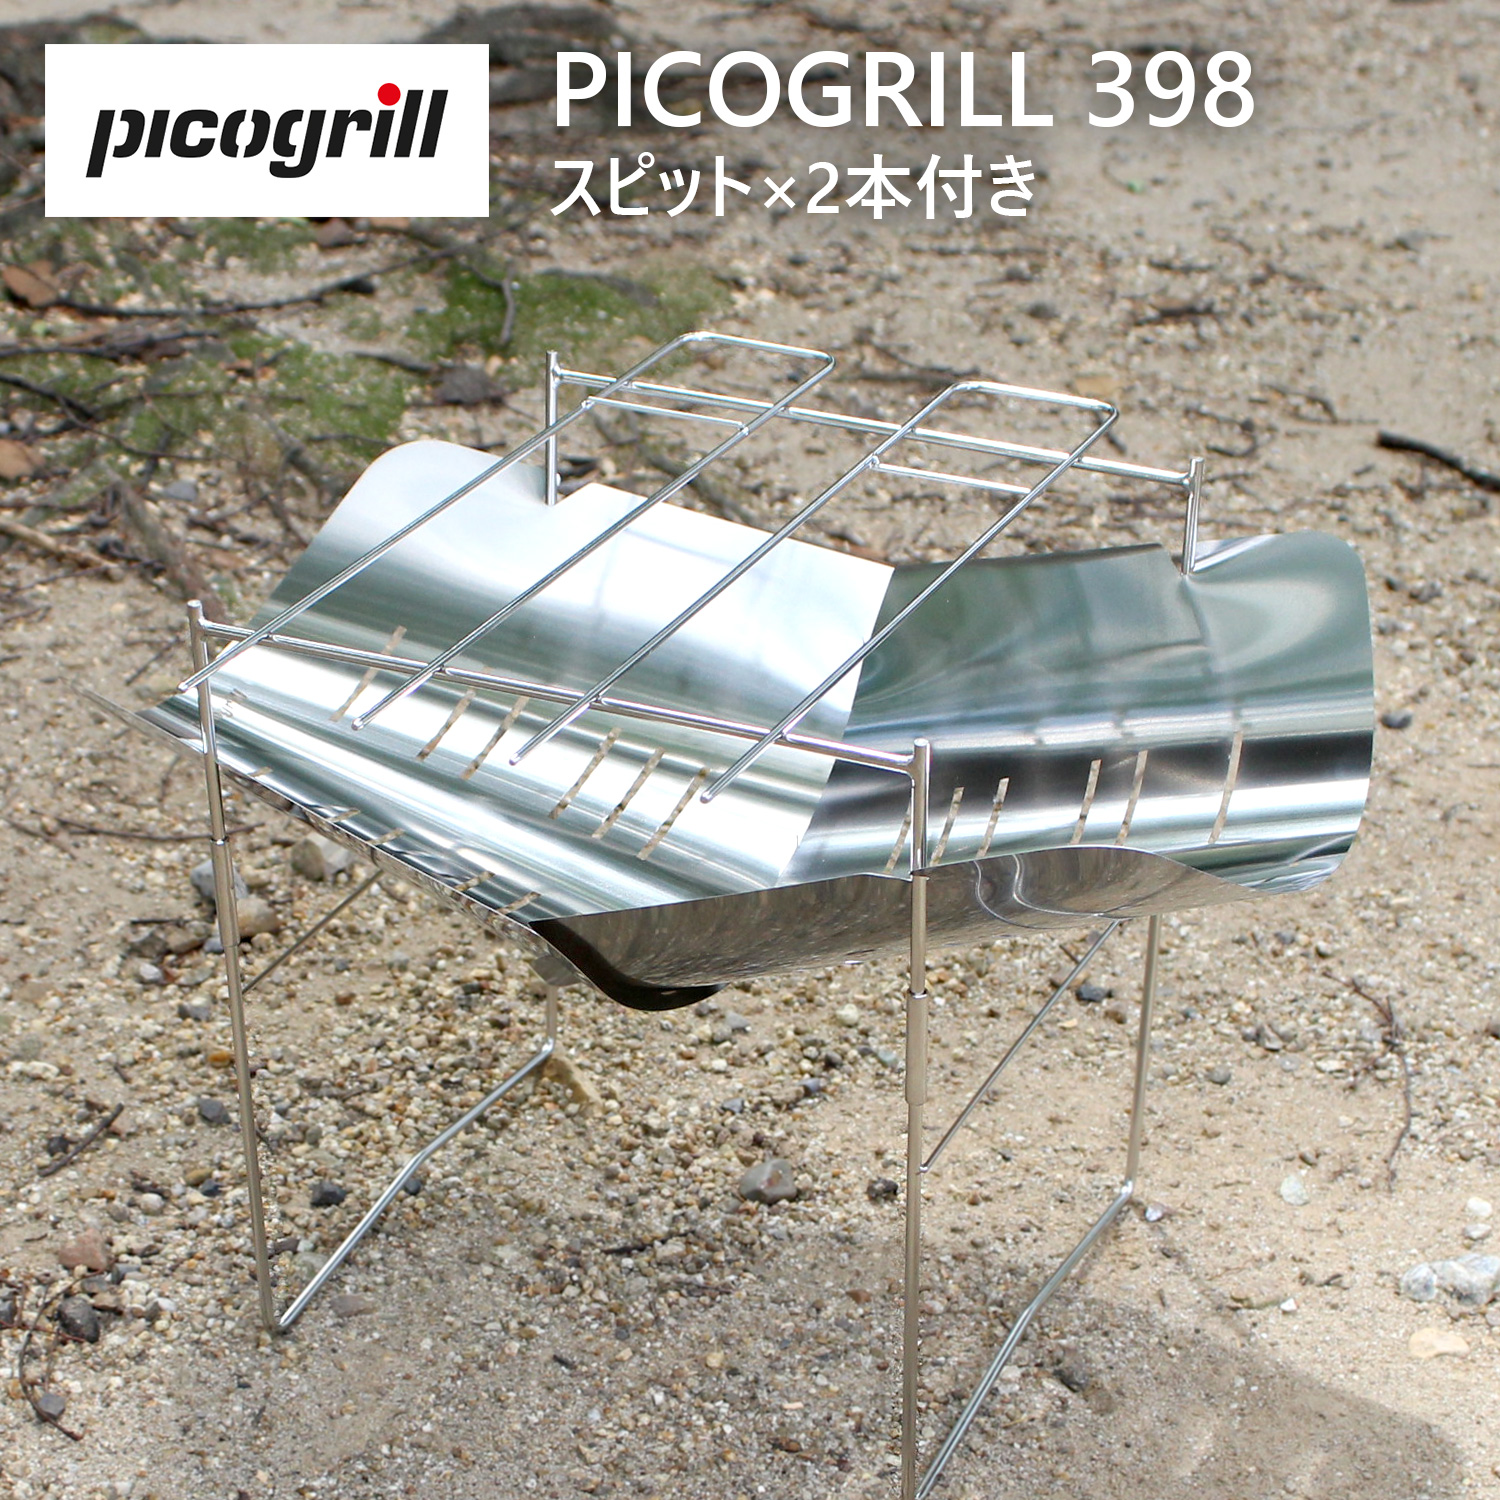 picogrill ピコグリル picogrill398 ピコグリル398 アウトドア グリル 焚火台 焚き火台 キャンプ 調理器具 プレゼント  ギフト アウトドア キャンプ 送料無料